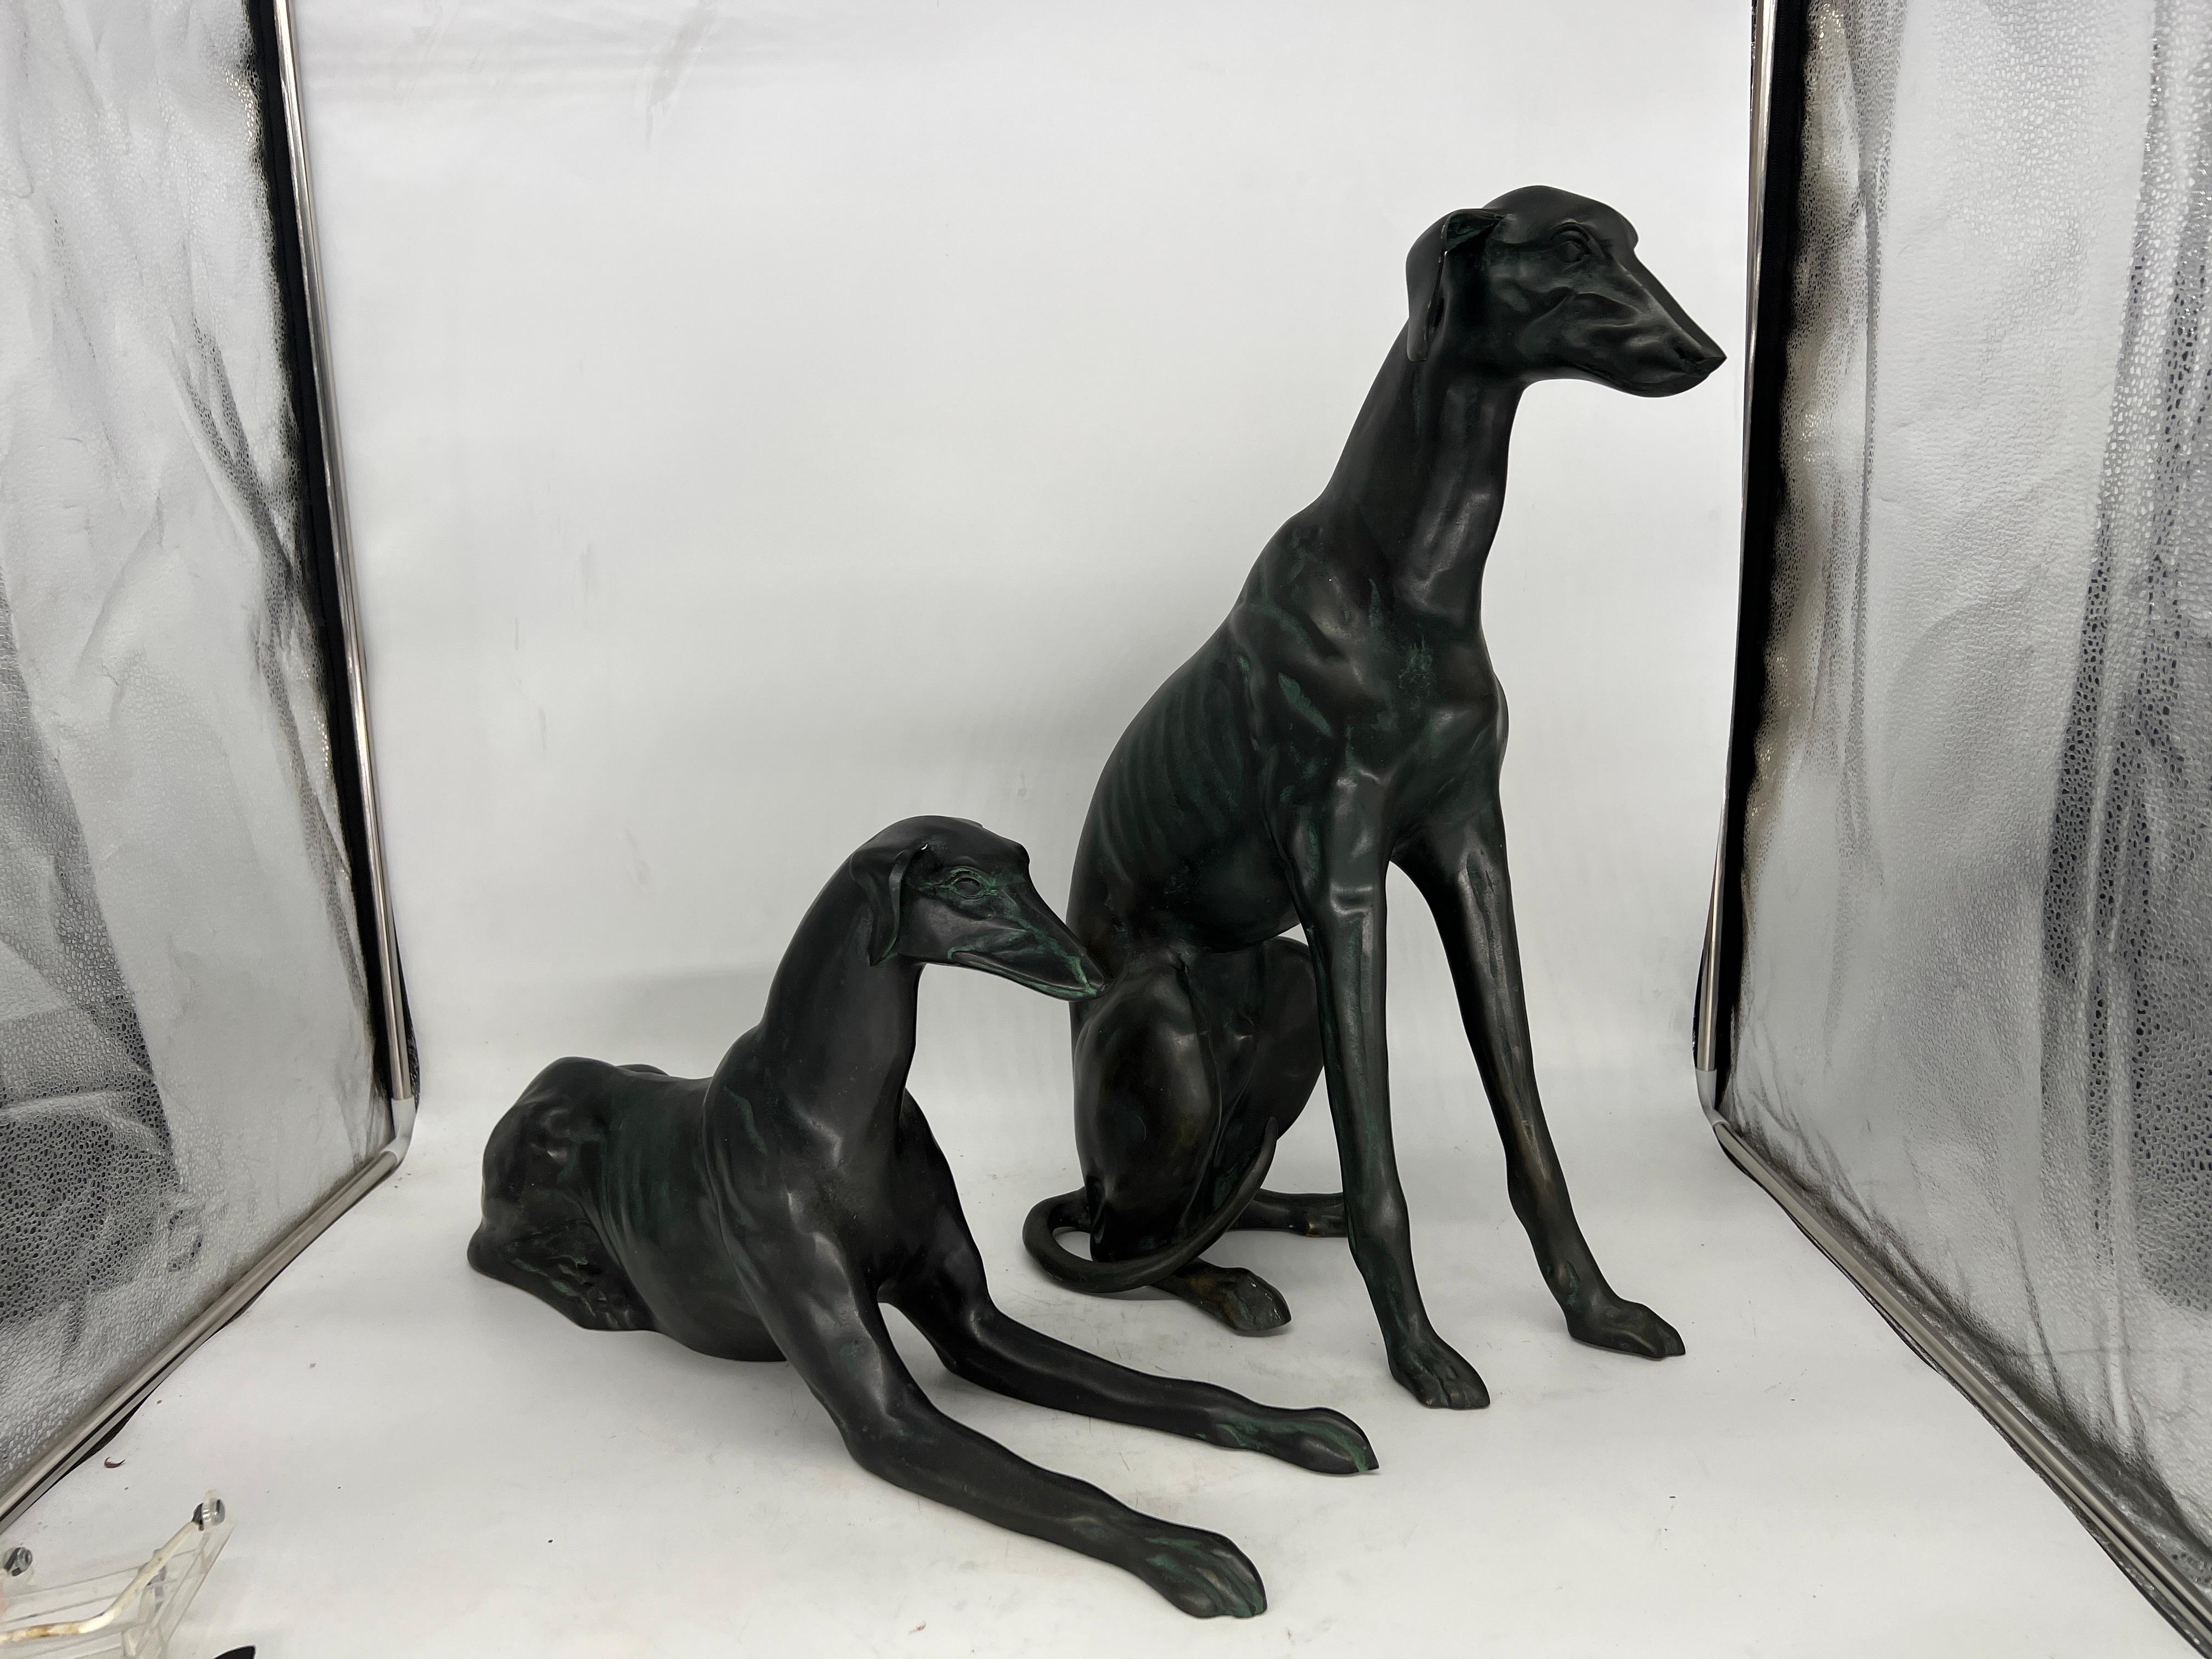 Paar, schwere Whippet-Hundestatuen aus Bronze.

Jede Statue ist aus hochwertiger Bronze gegossen, deren Oberfläche eine grüne Patina aufweist. Die Whippets messen:
Lg Hund - 22.75 h 8 b 14.5 d
kleiner Hund - 12.25 h 23 d 8 w